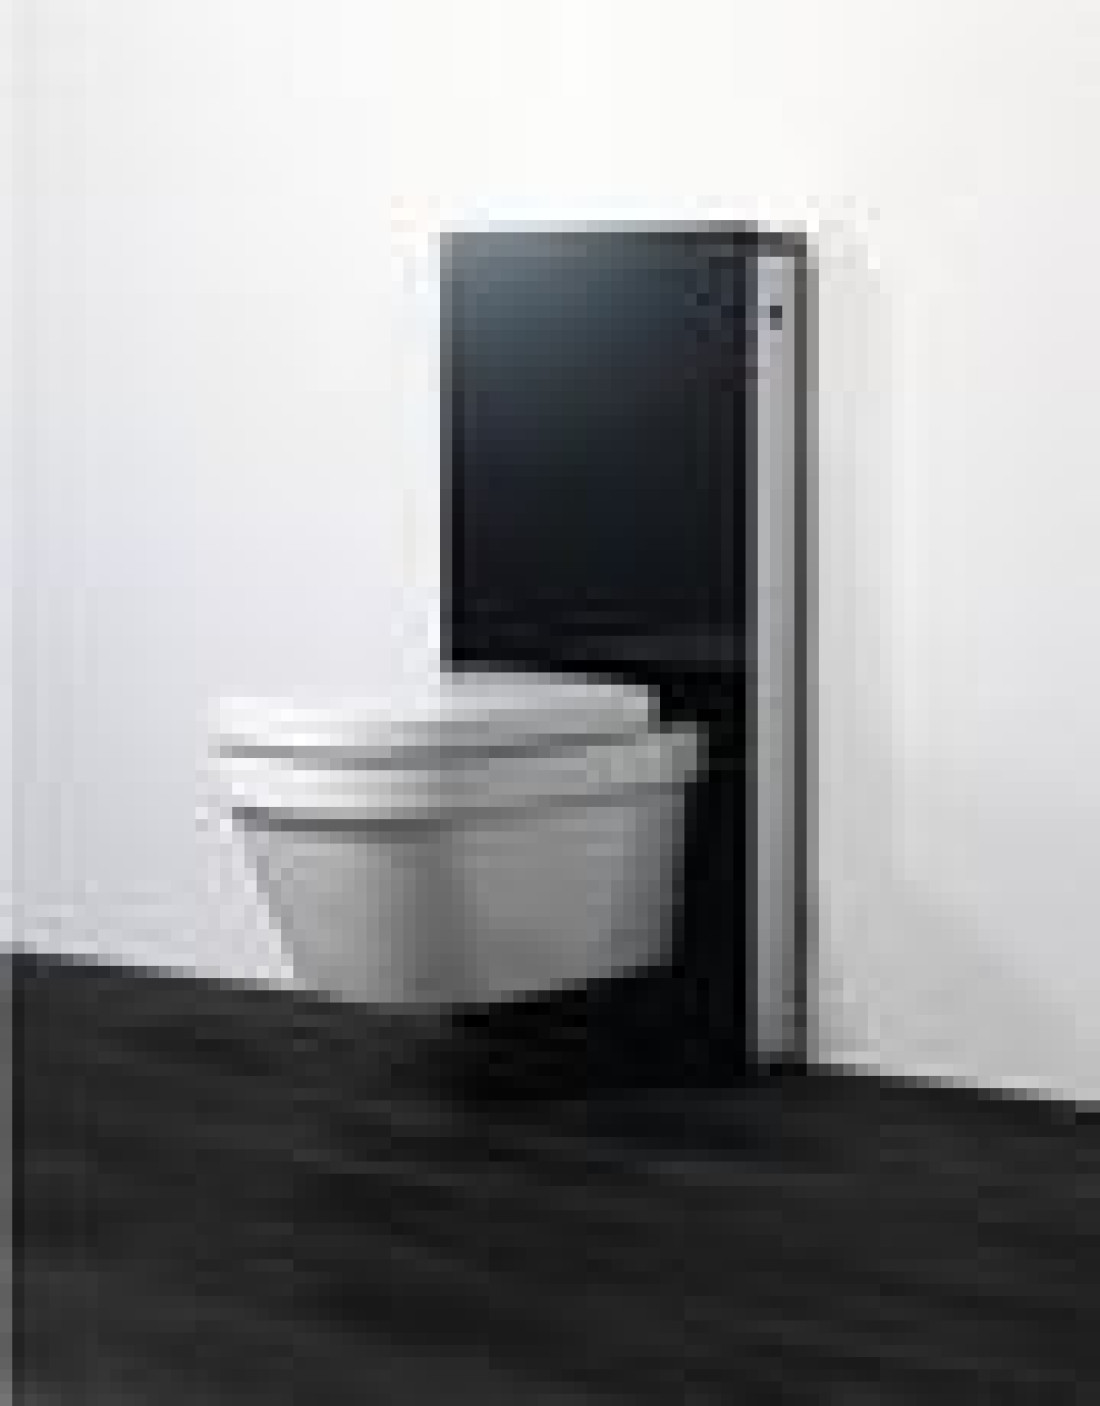 Geberit Monolith - nowy pomysł na aranżację łazienki